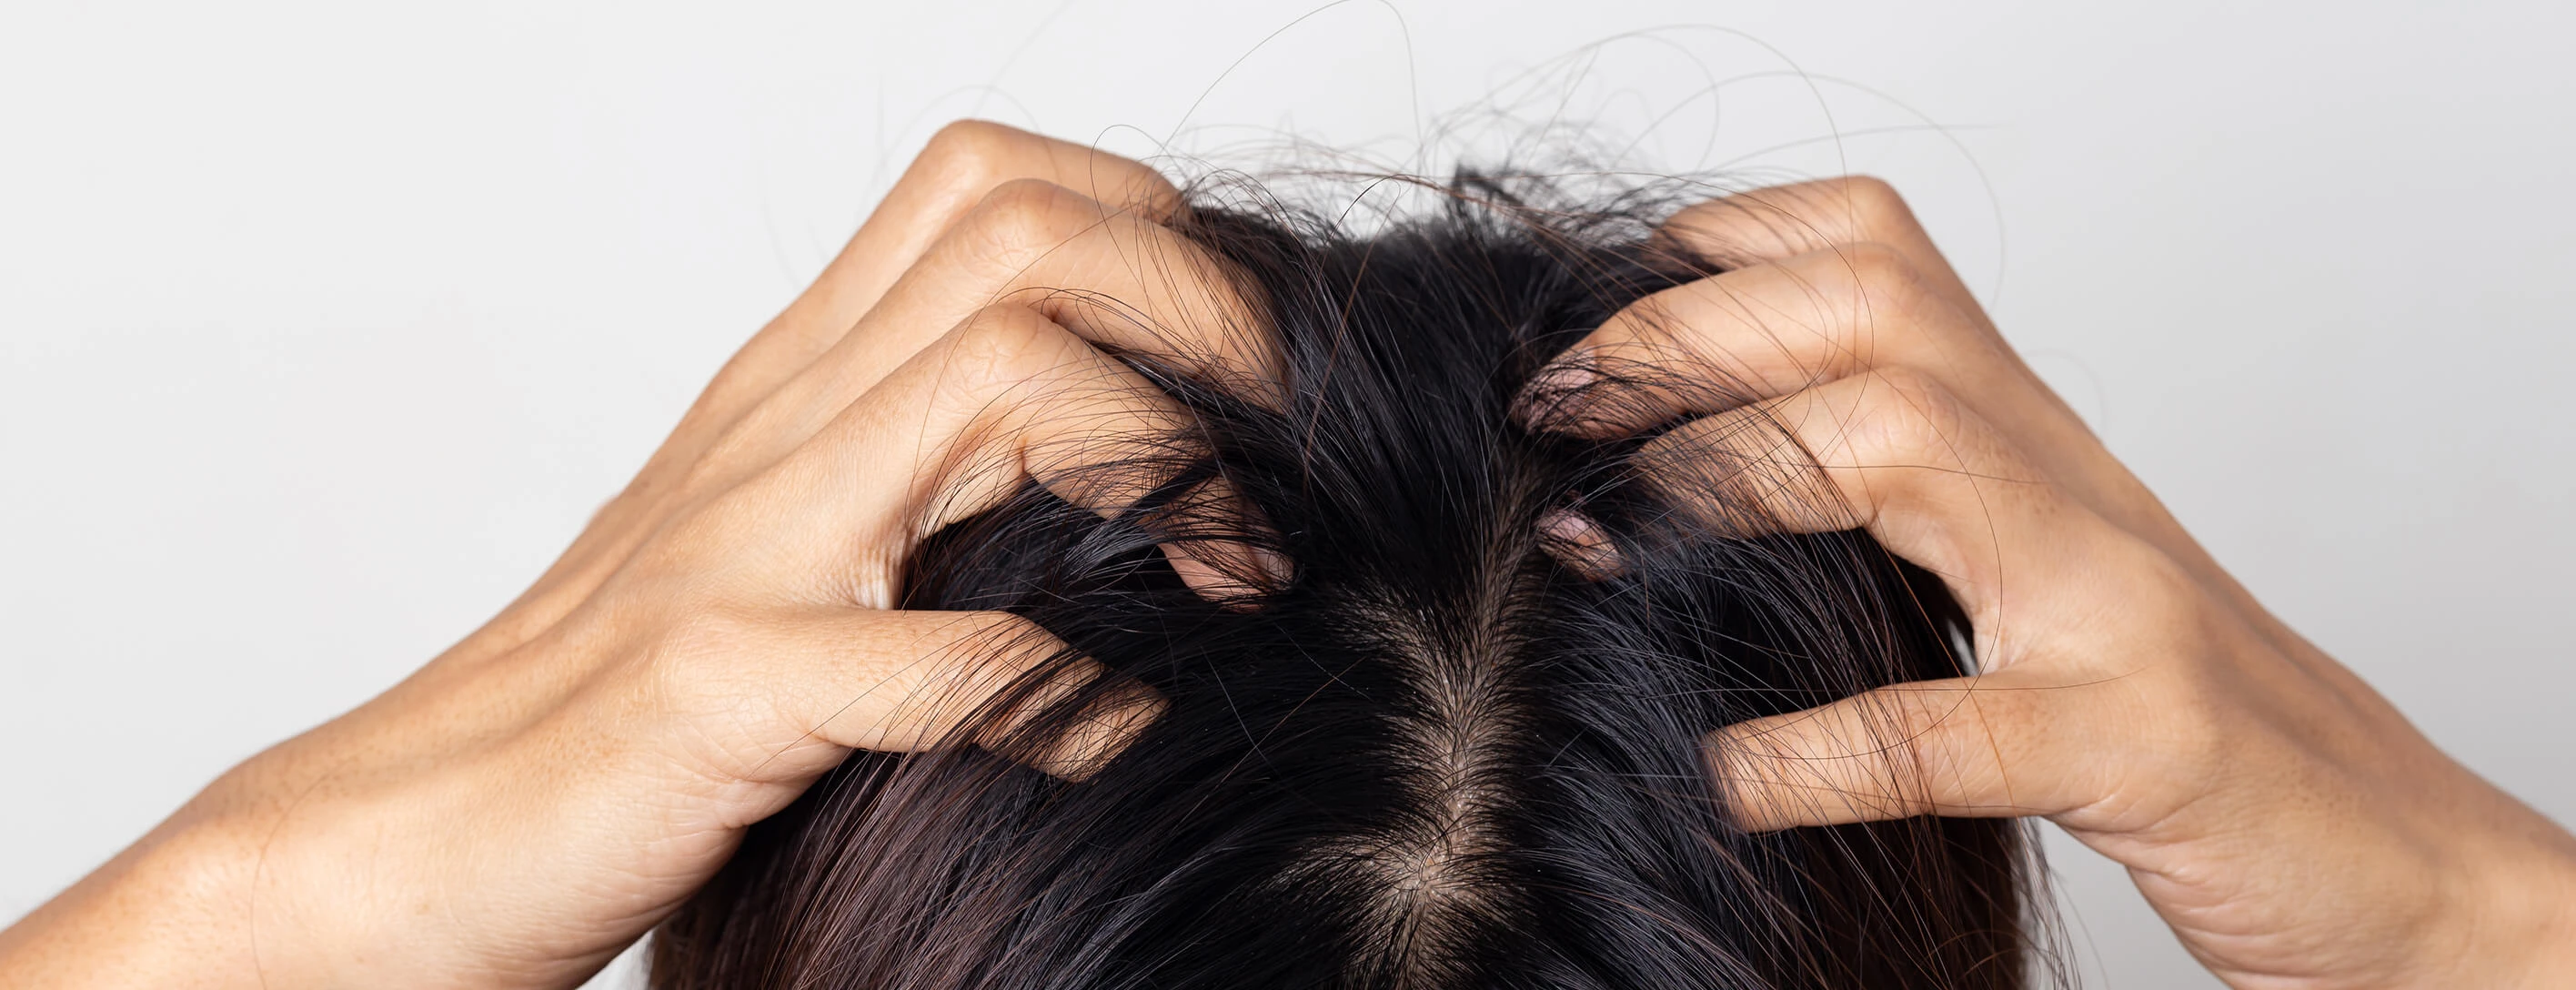 Болячки на коже головы: причины, лечение | Capillum Clinic